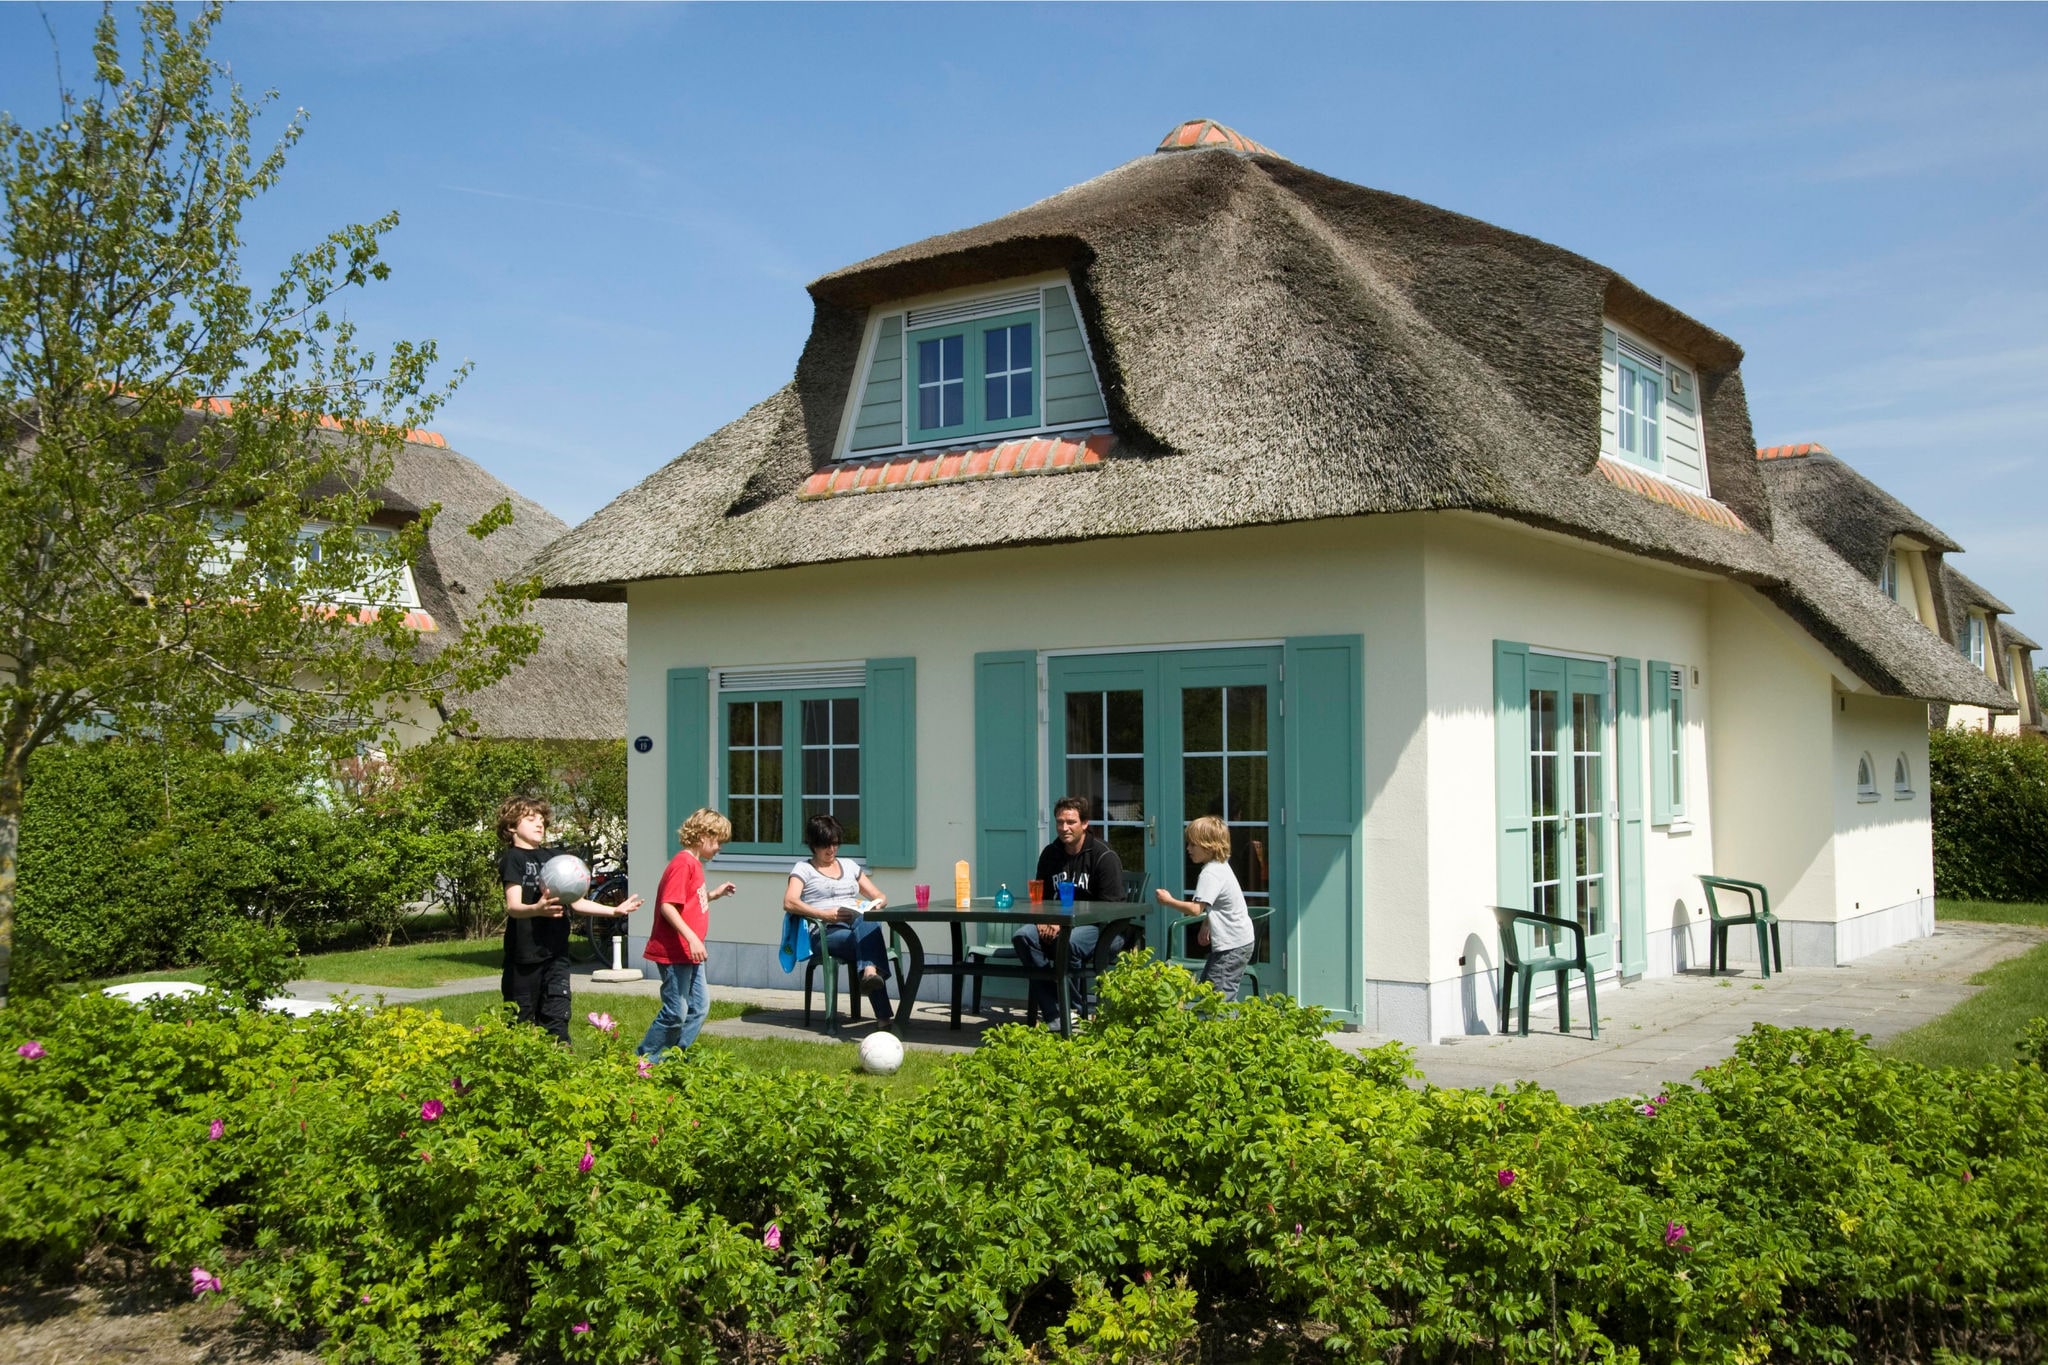 Gerestylde villa met afwasmachine, zee op 1 km. in Domburg